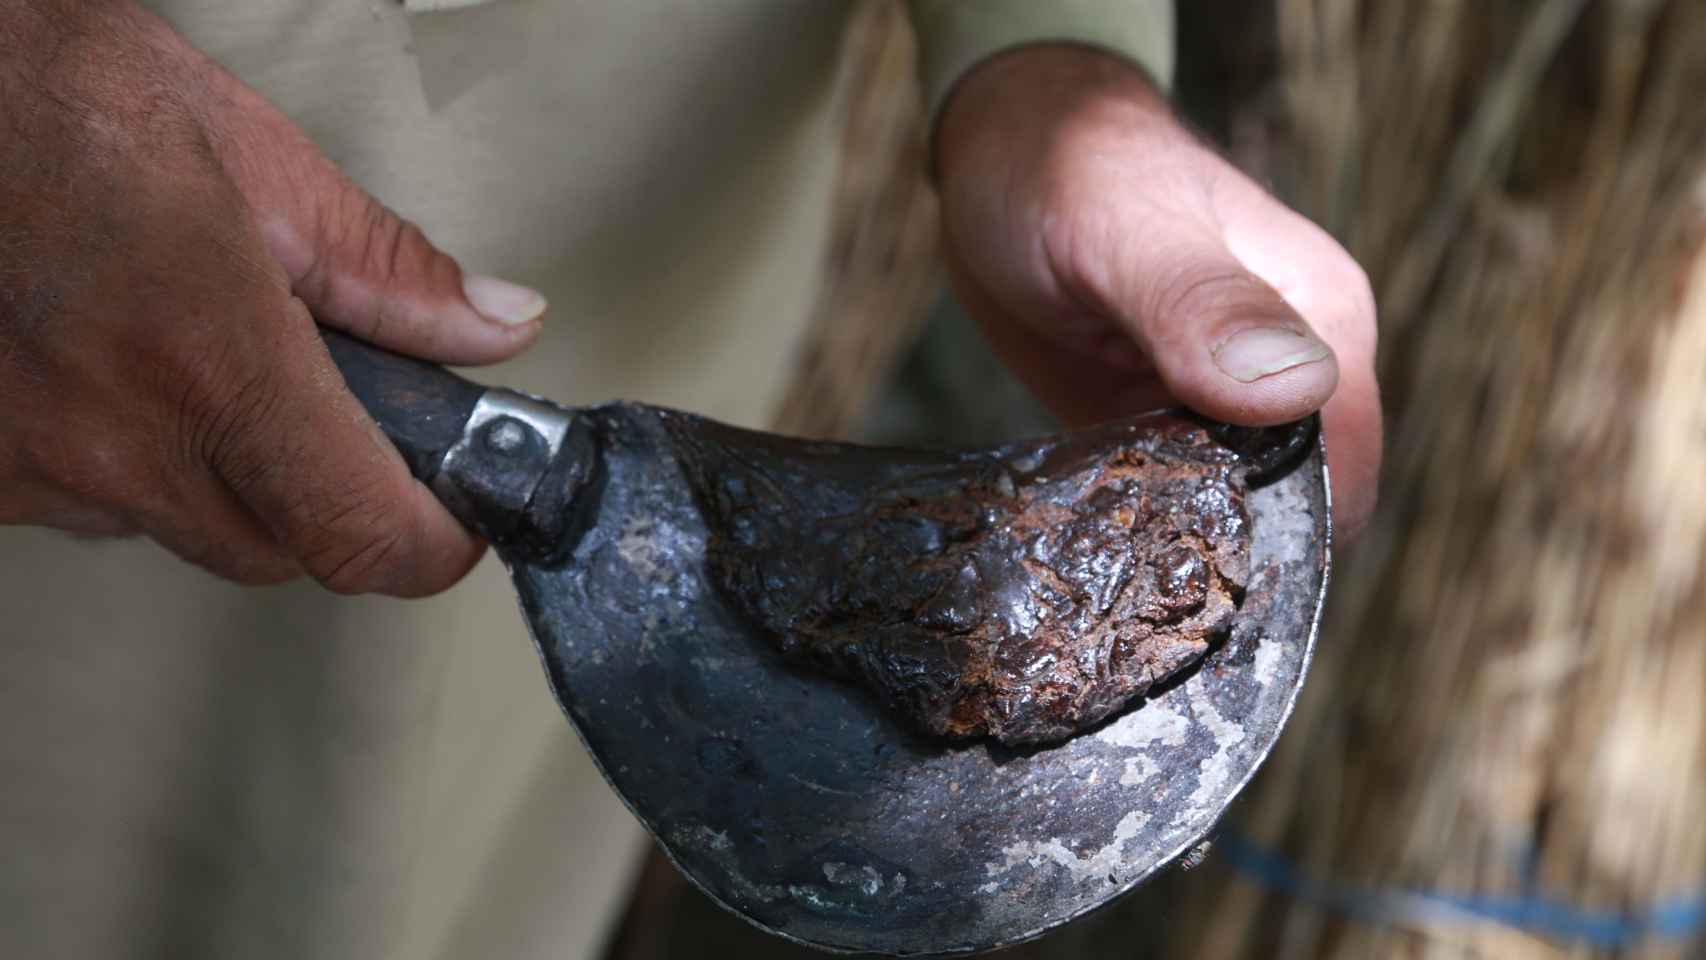 Agricultores extraen opio (heroína cruda) de los capullos de amapola y los conservan en el distrito de Khogyani.